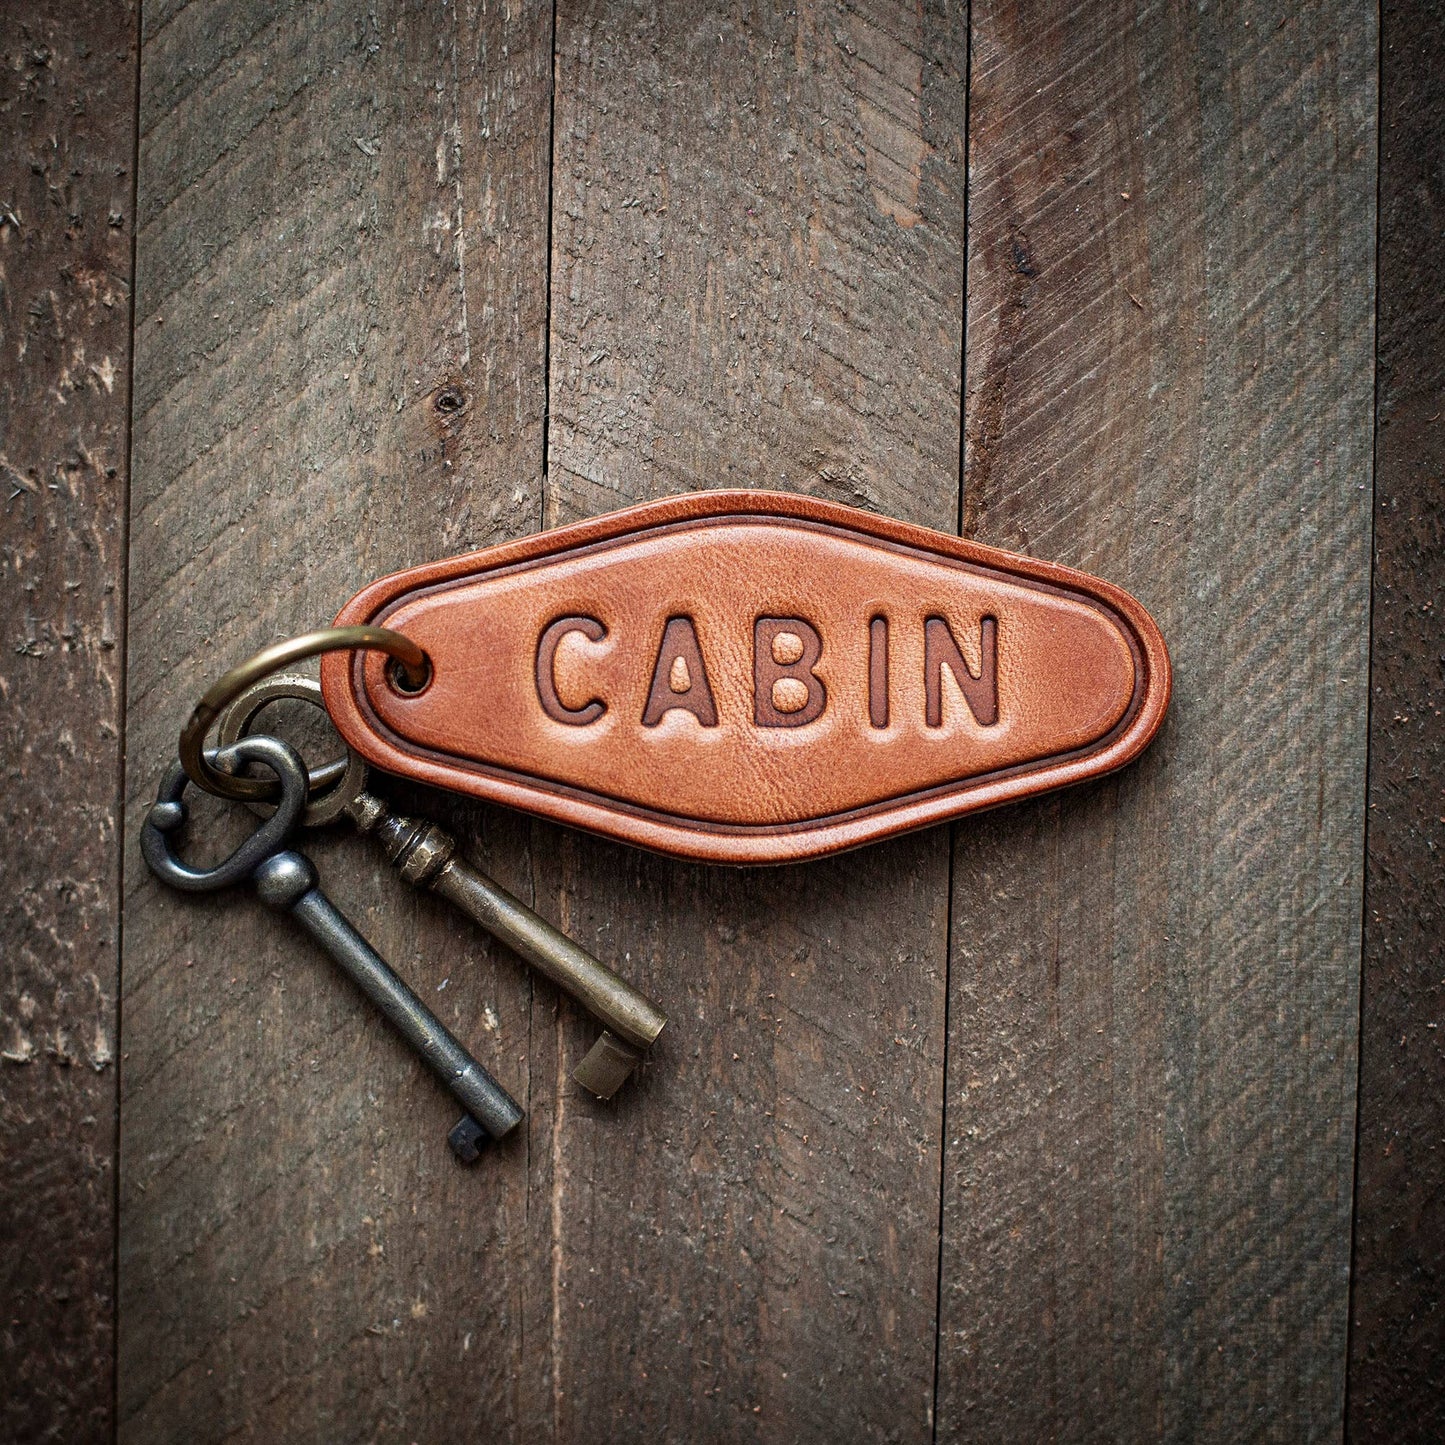 CABIN keychain